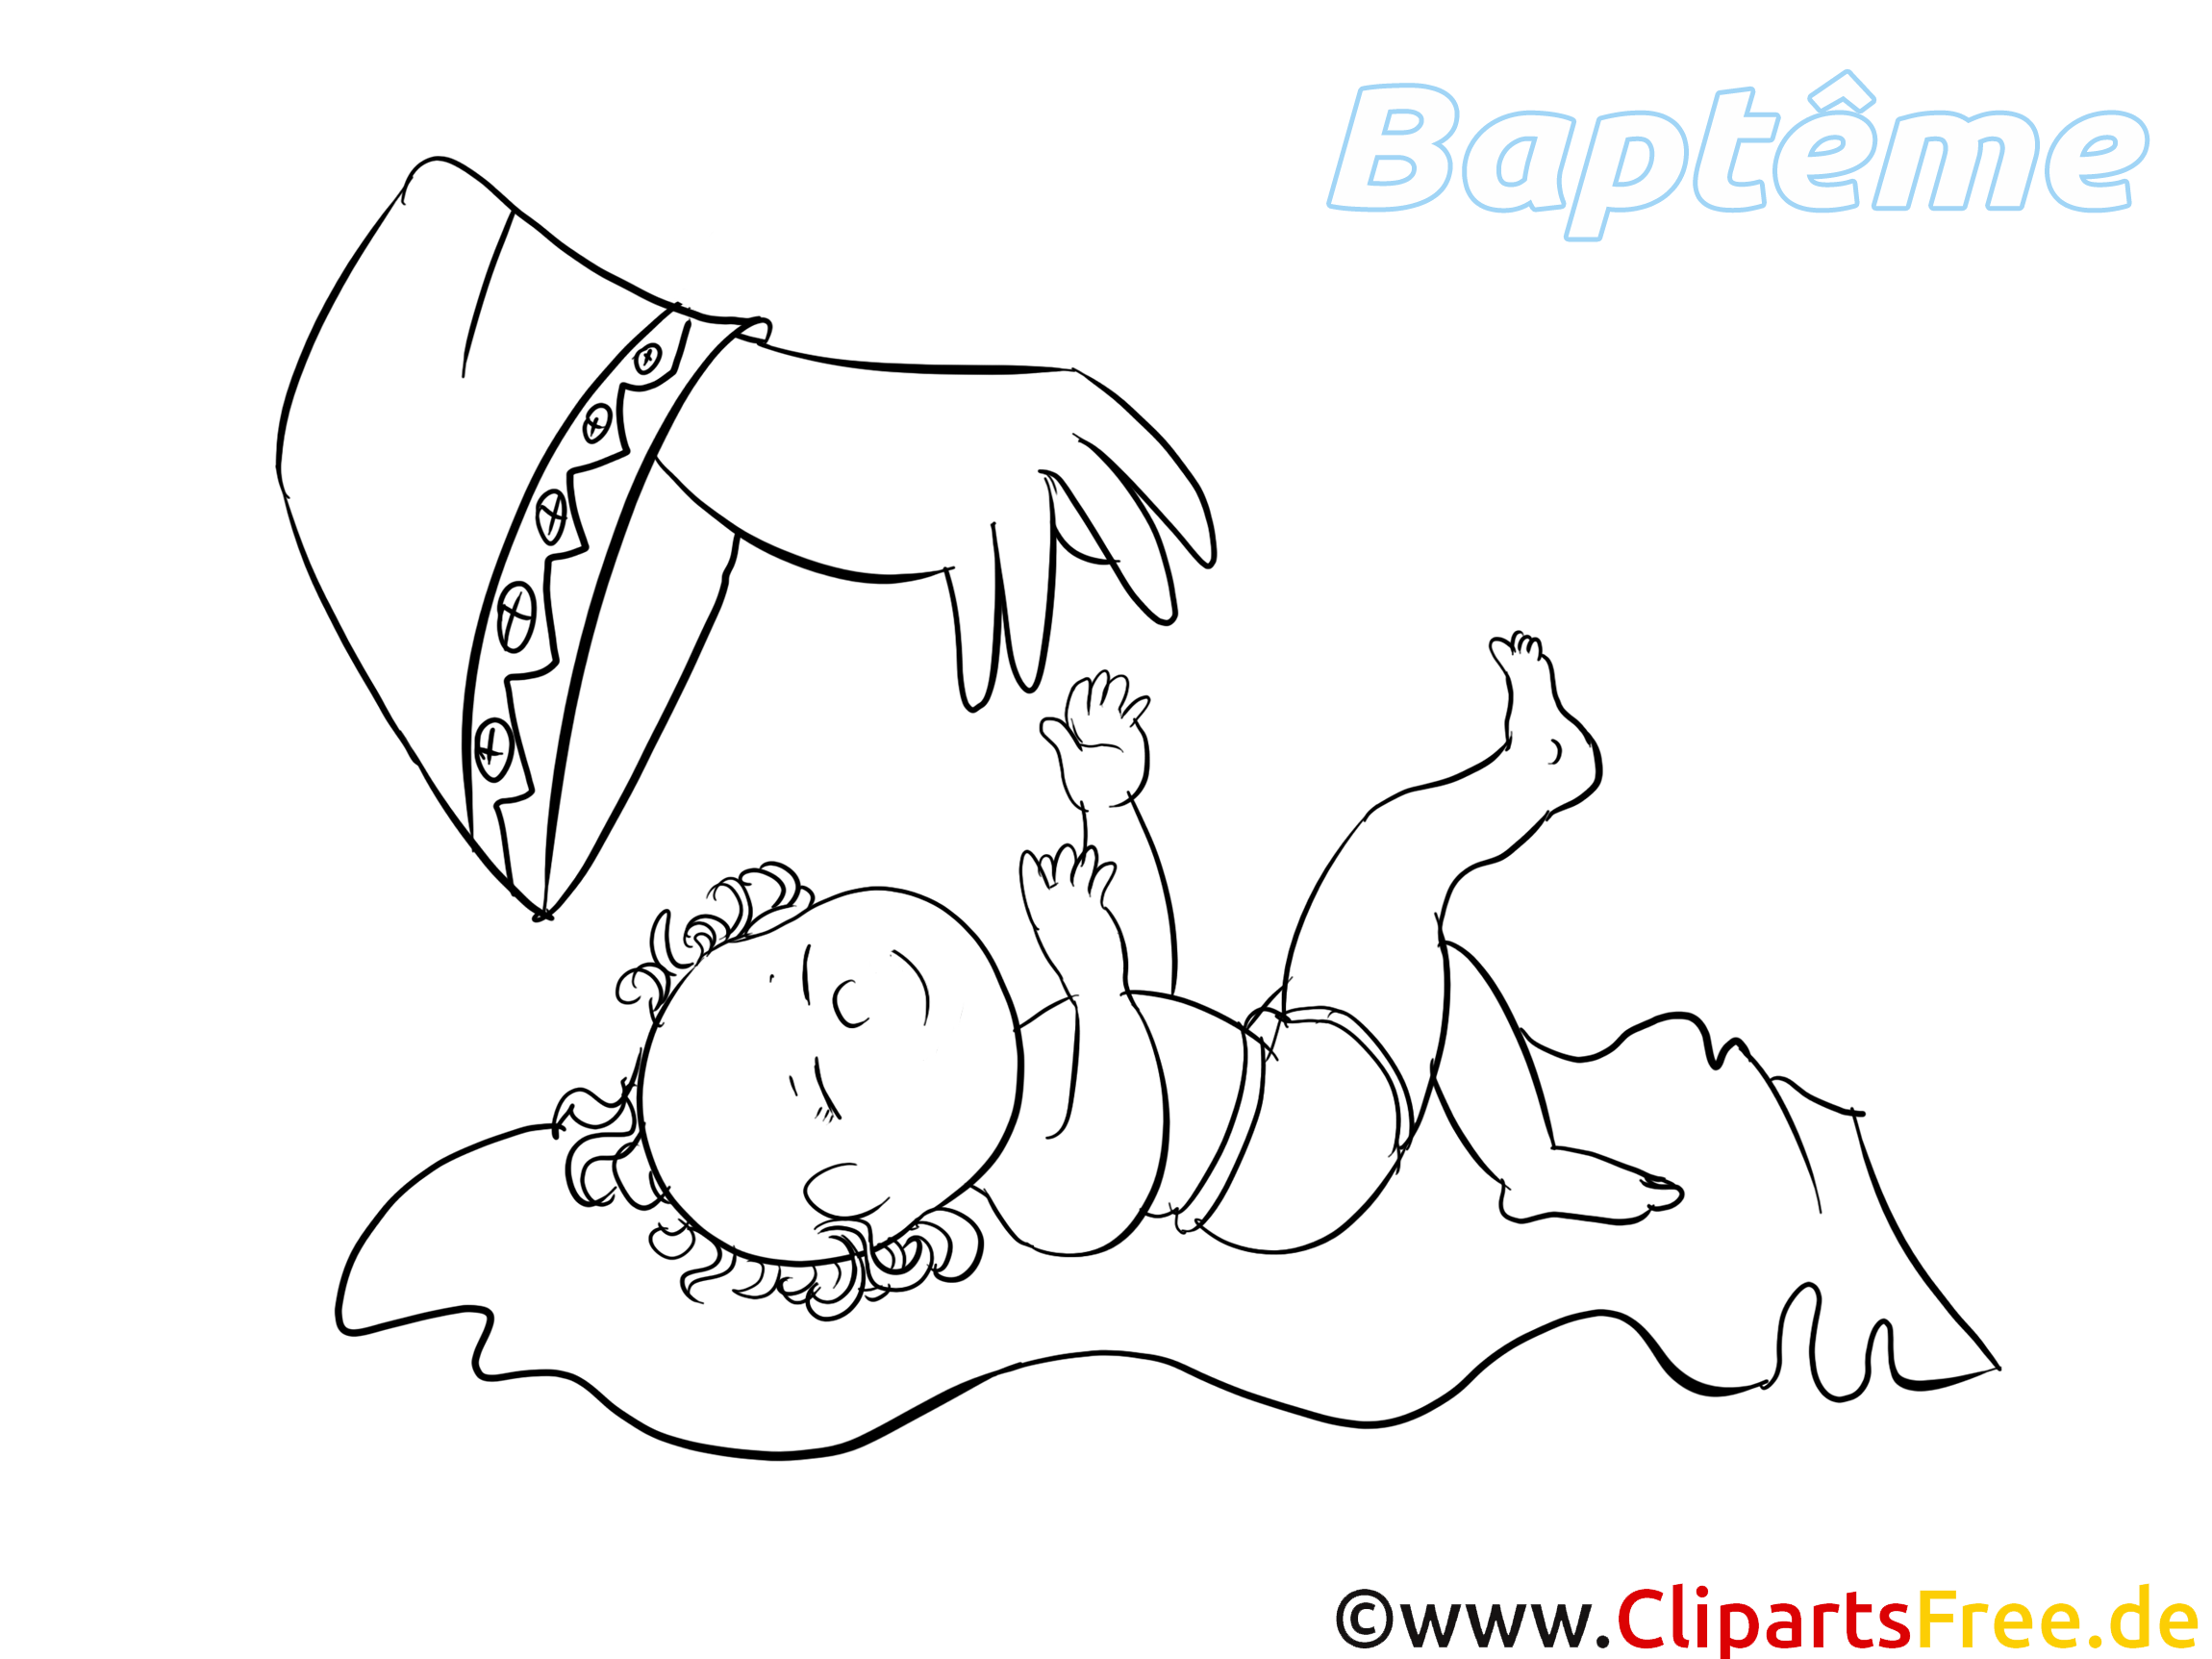 Baptême coloriage - Bébé dessin